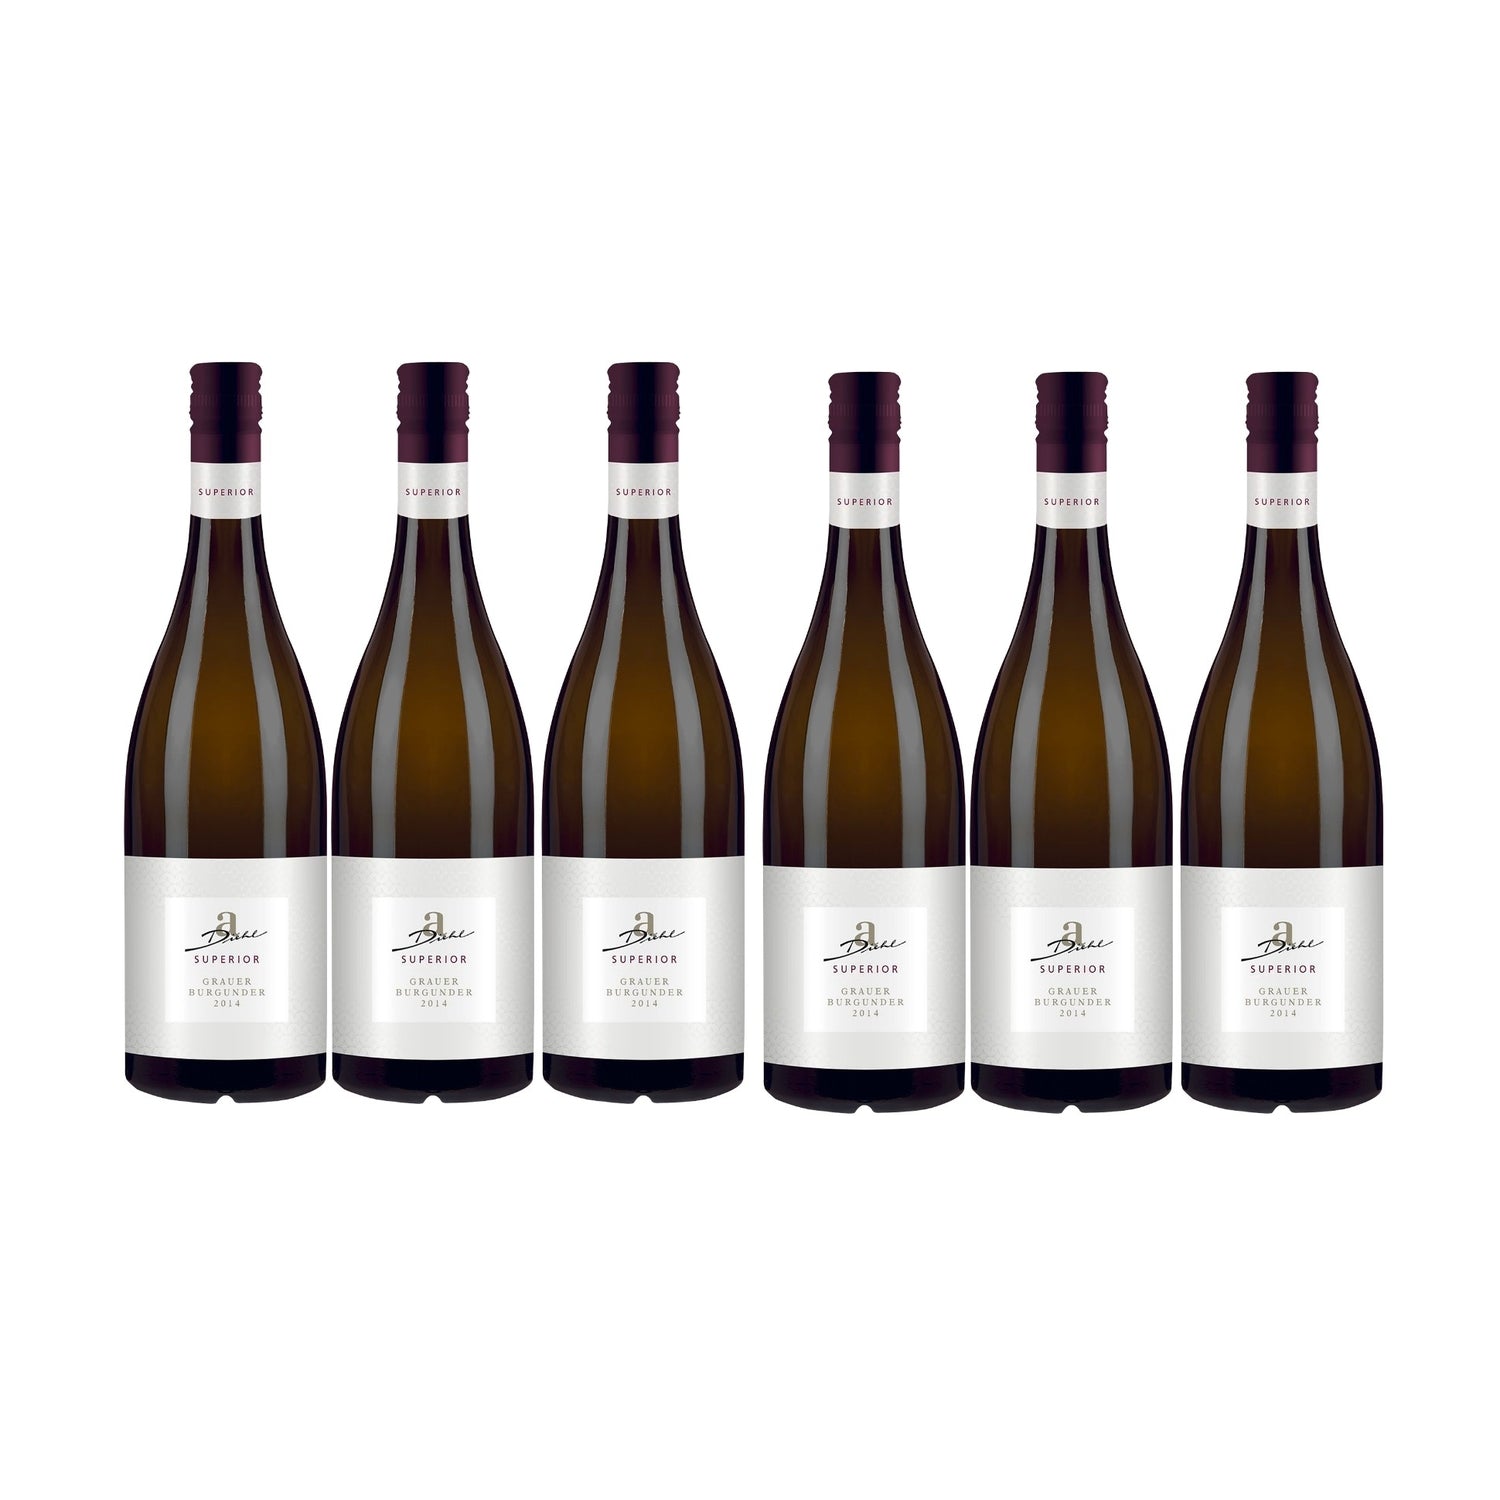 A. Diehl Superior Grauer Burgunder Weißwein veganer Wein trocken QbA (6 x 0.75l) - Versanel -